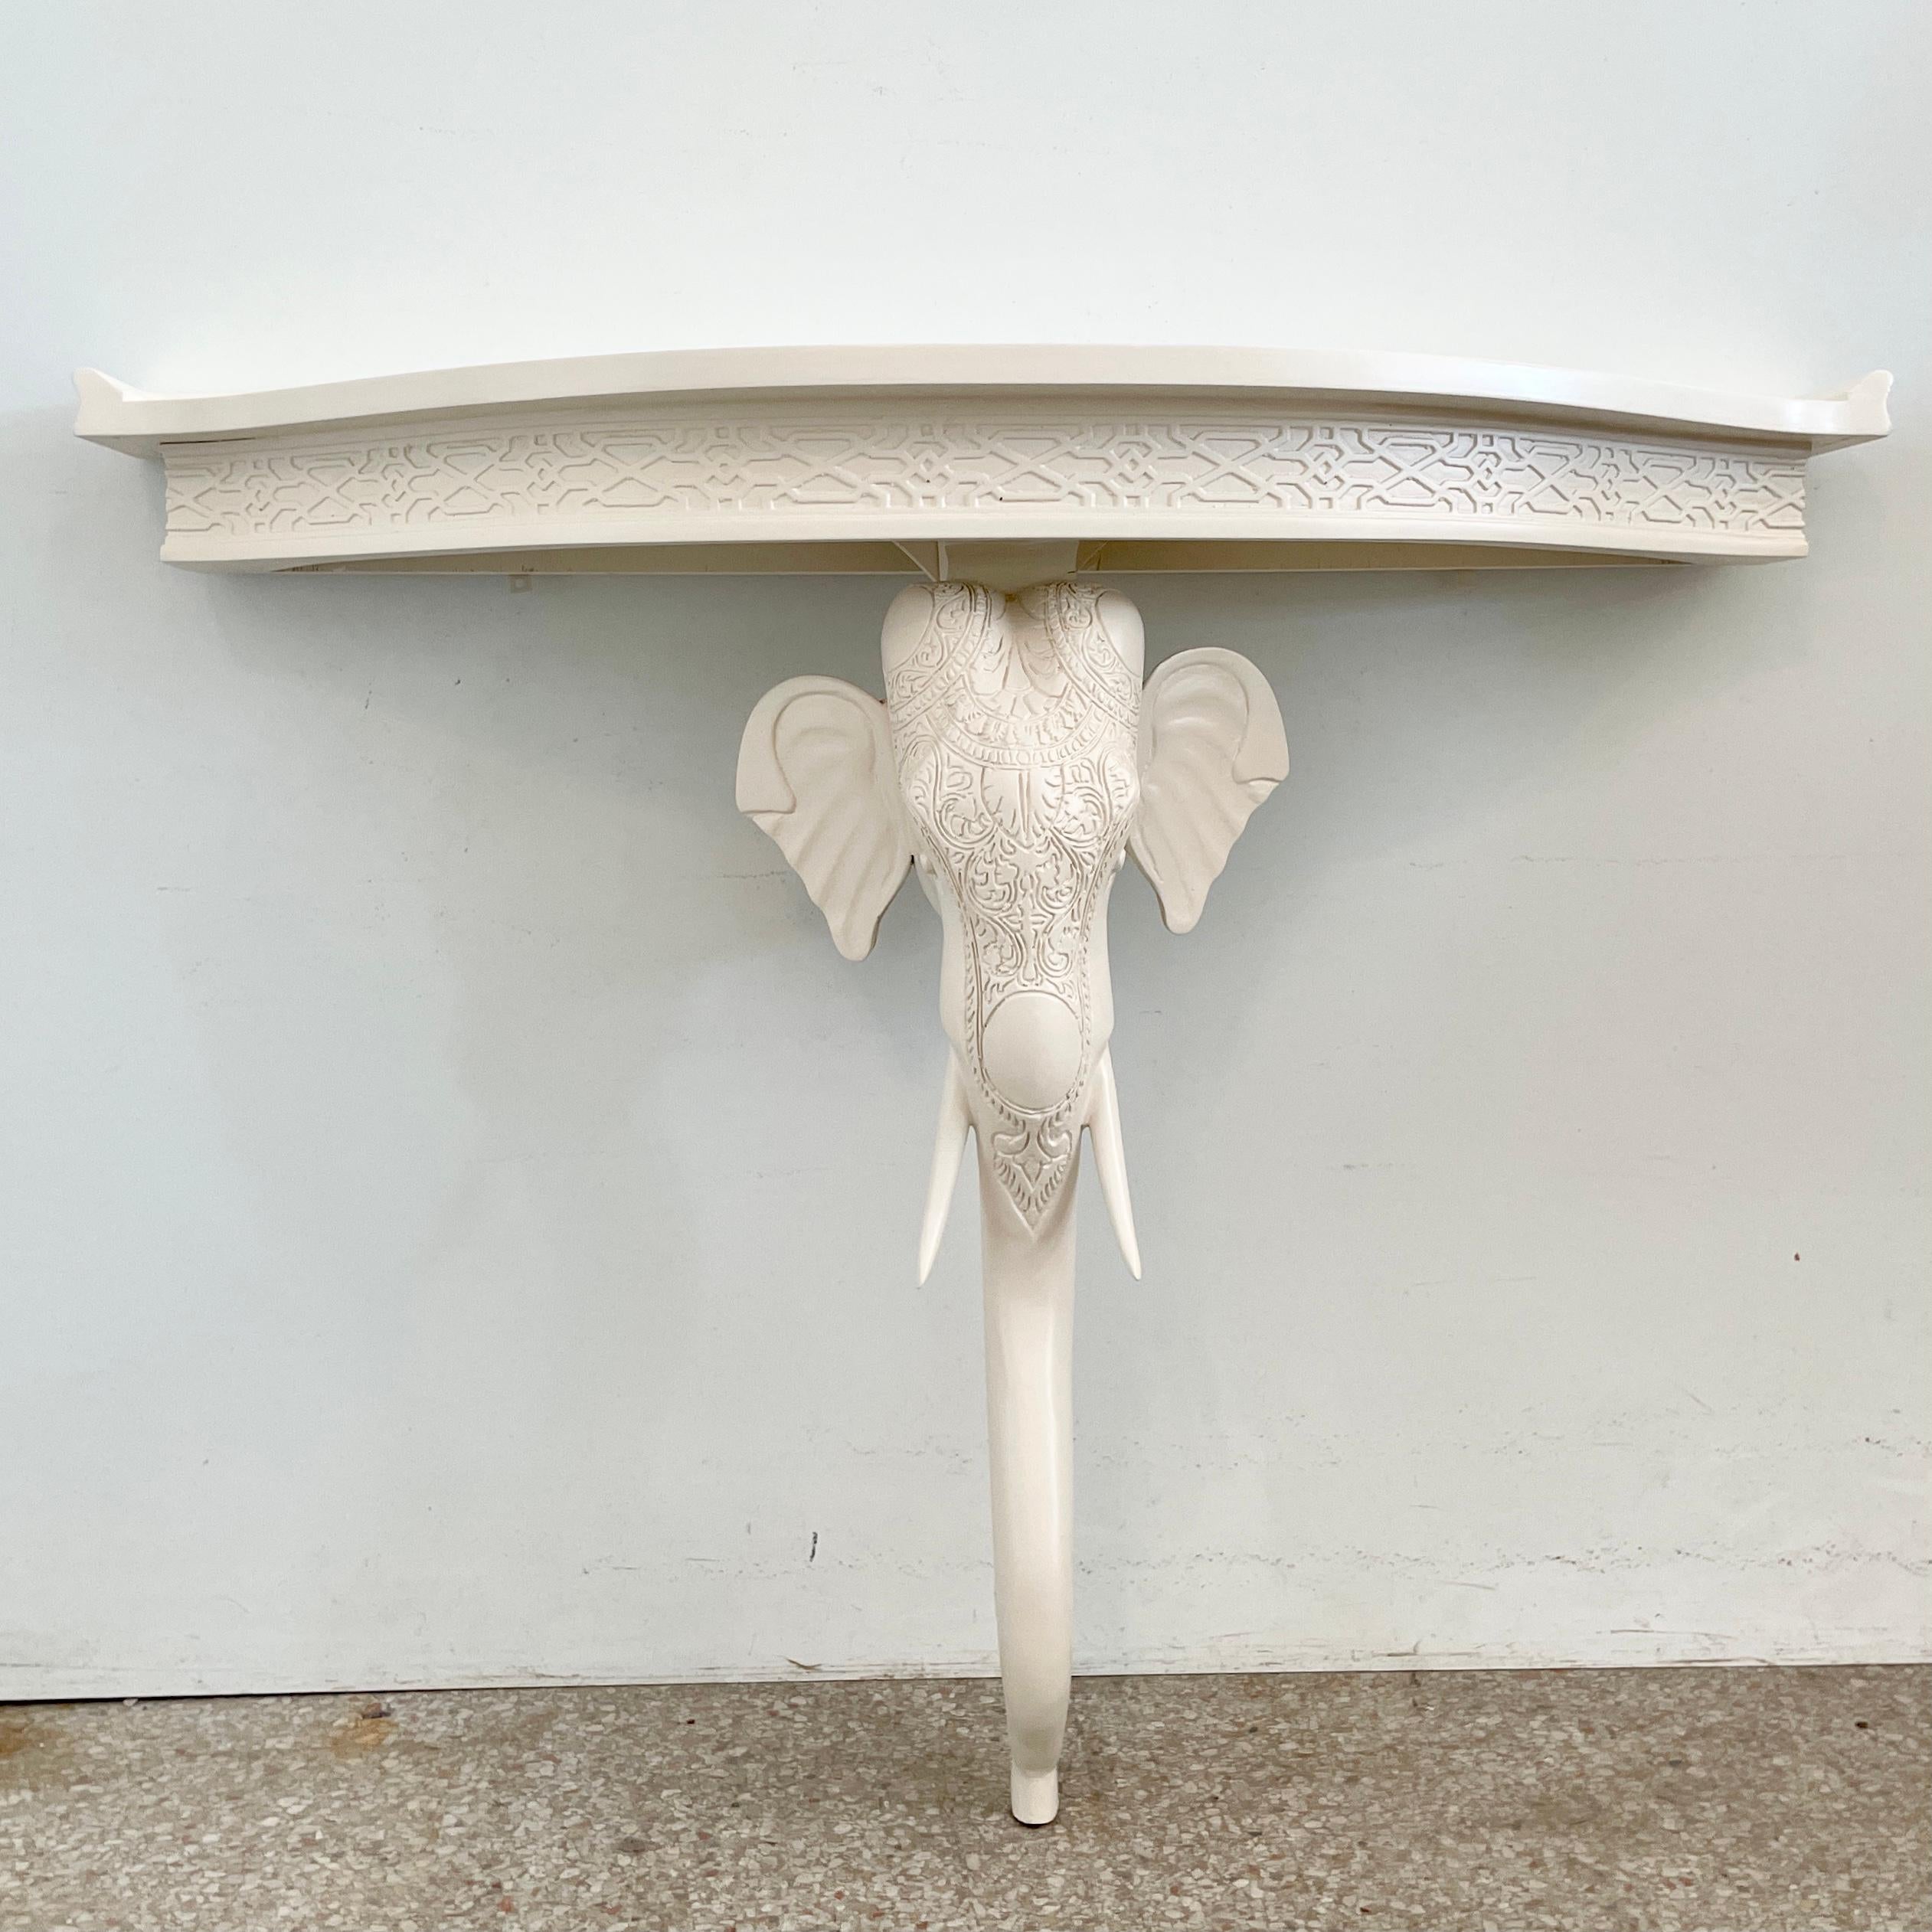 Schöne holzgeschnitzte Elefantenkonsole von Gampel-Stoll, frisch elfenbeinfarben lackiert. Erstaunliche Details der Schnitzerei. Eine tolle Ergänzung für Ihr vom Boho Chic inspiriertes Interieur.